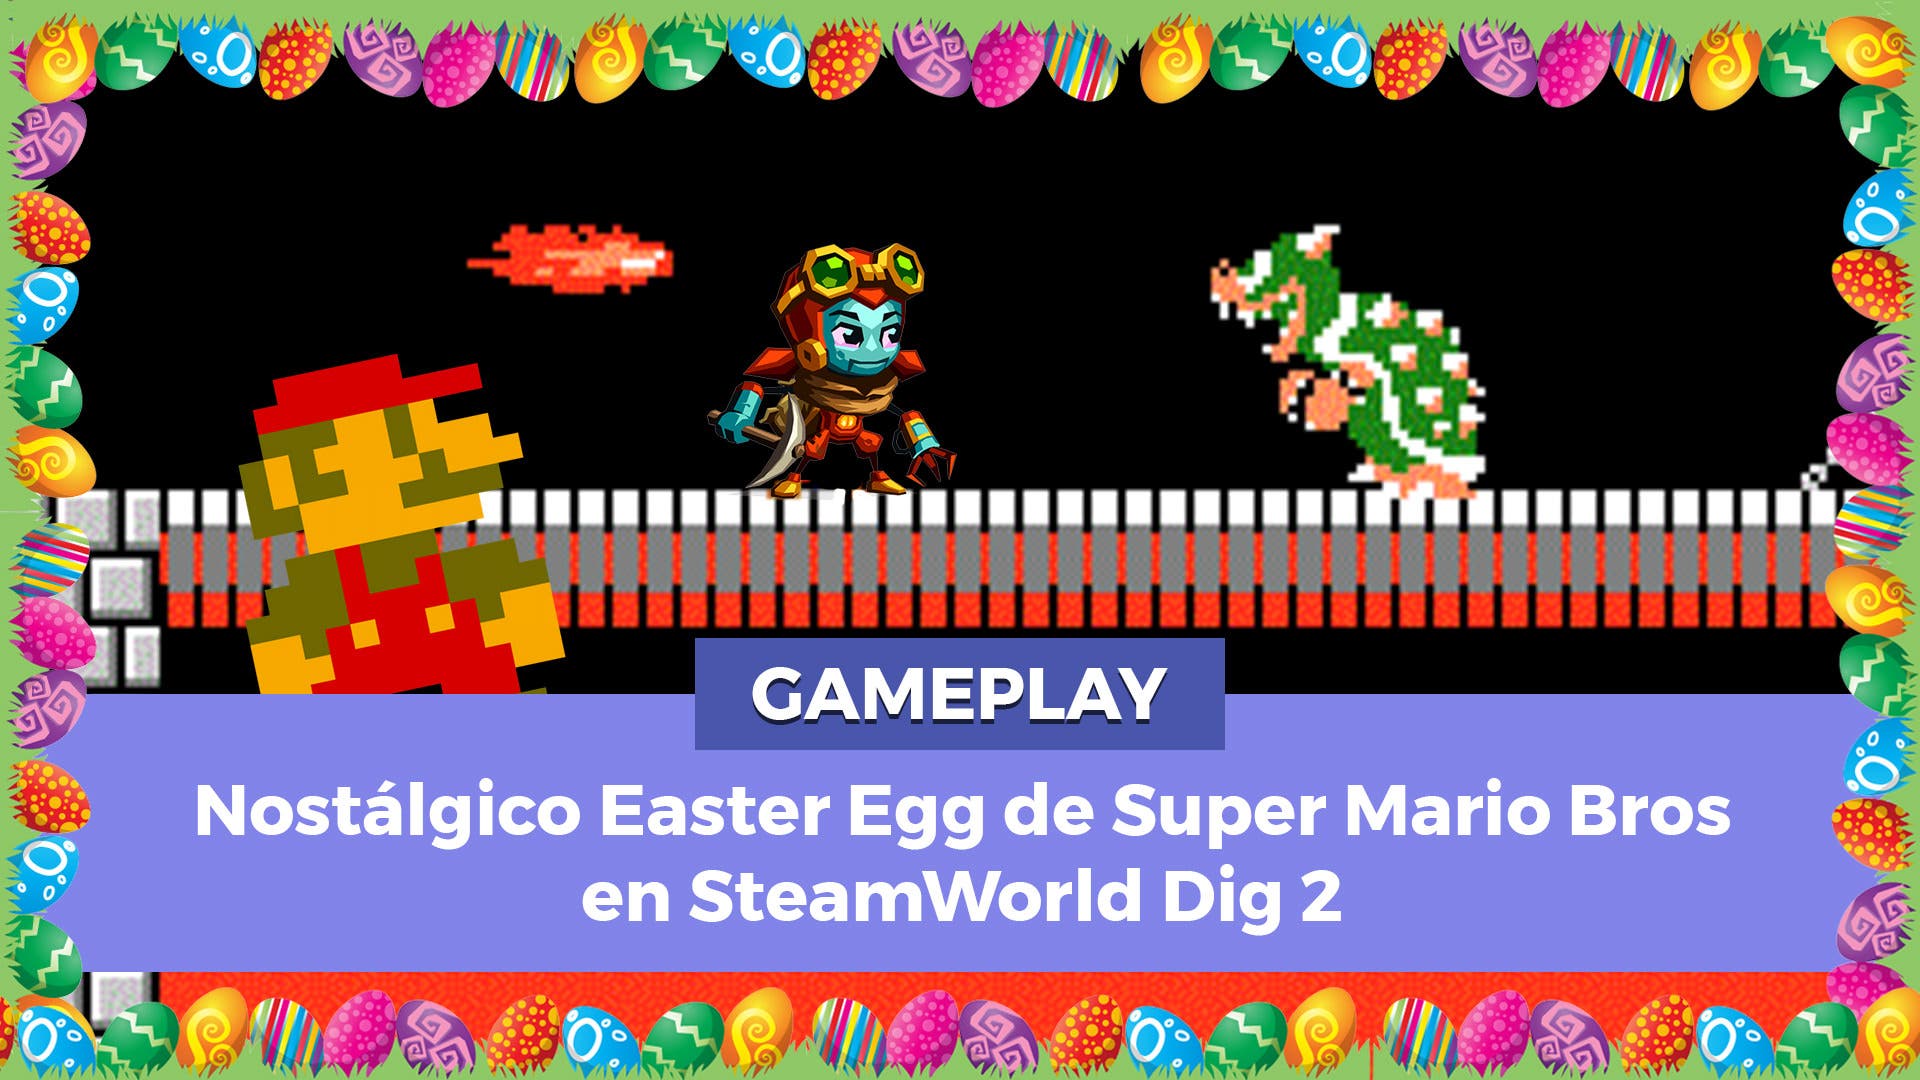 Nostálgico Easter Egg de Super Mario Bros en SteamWorld Dig 2